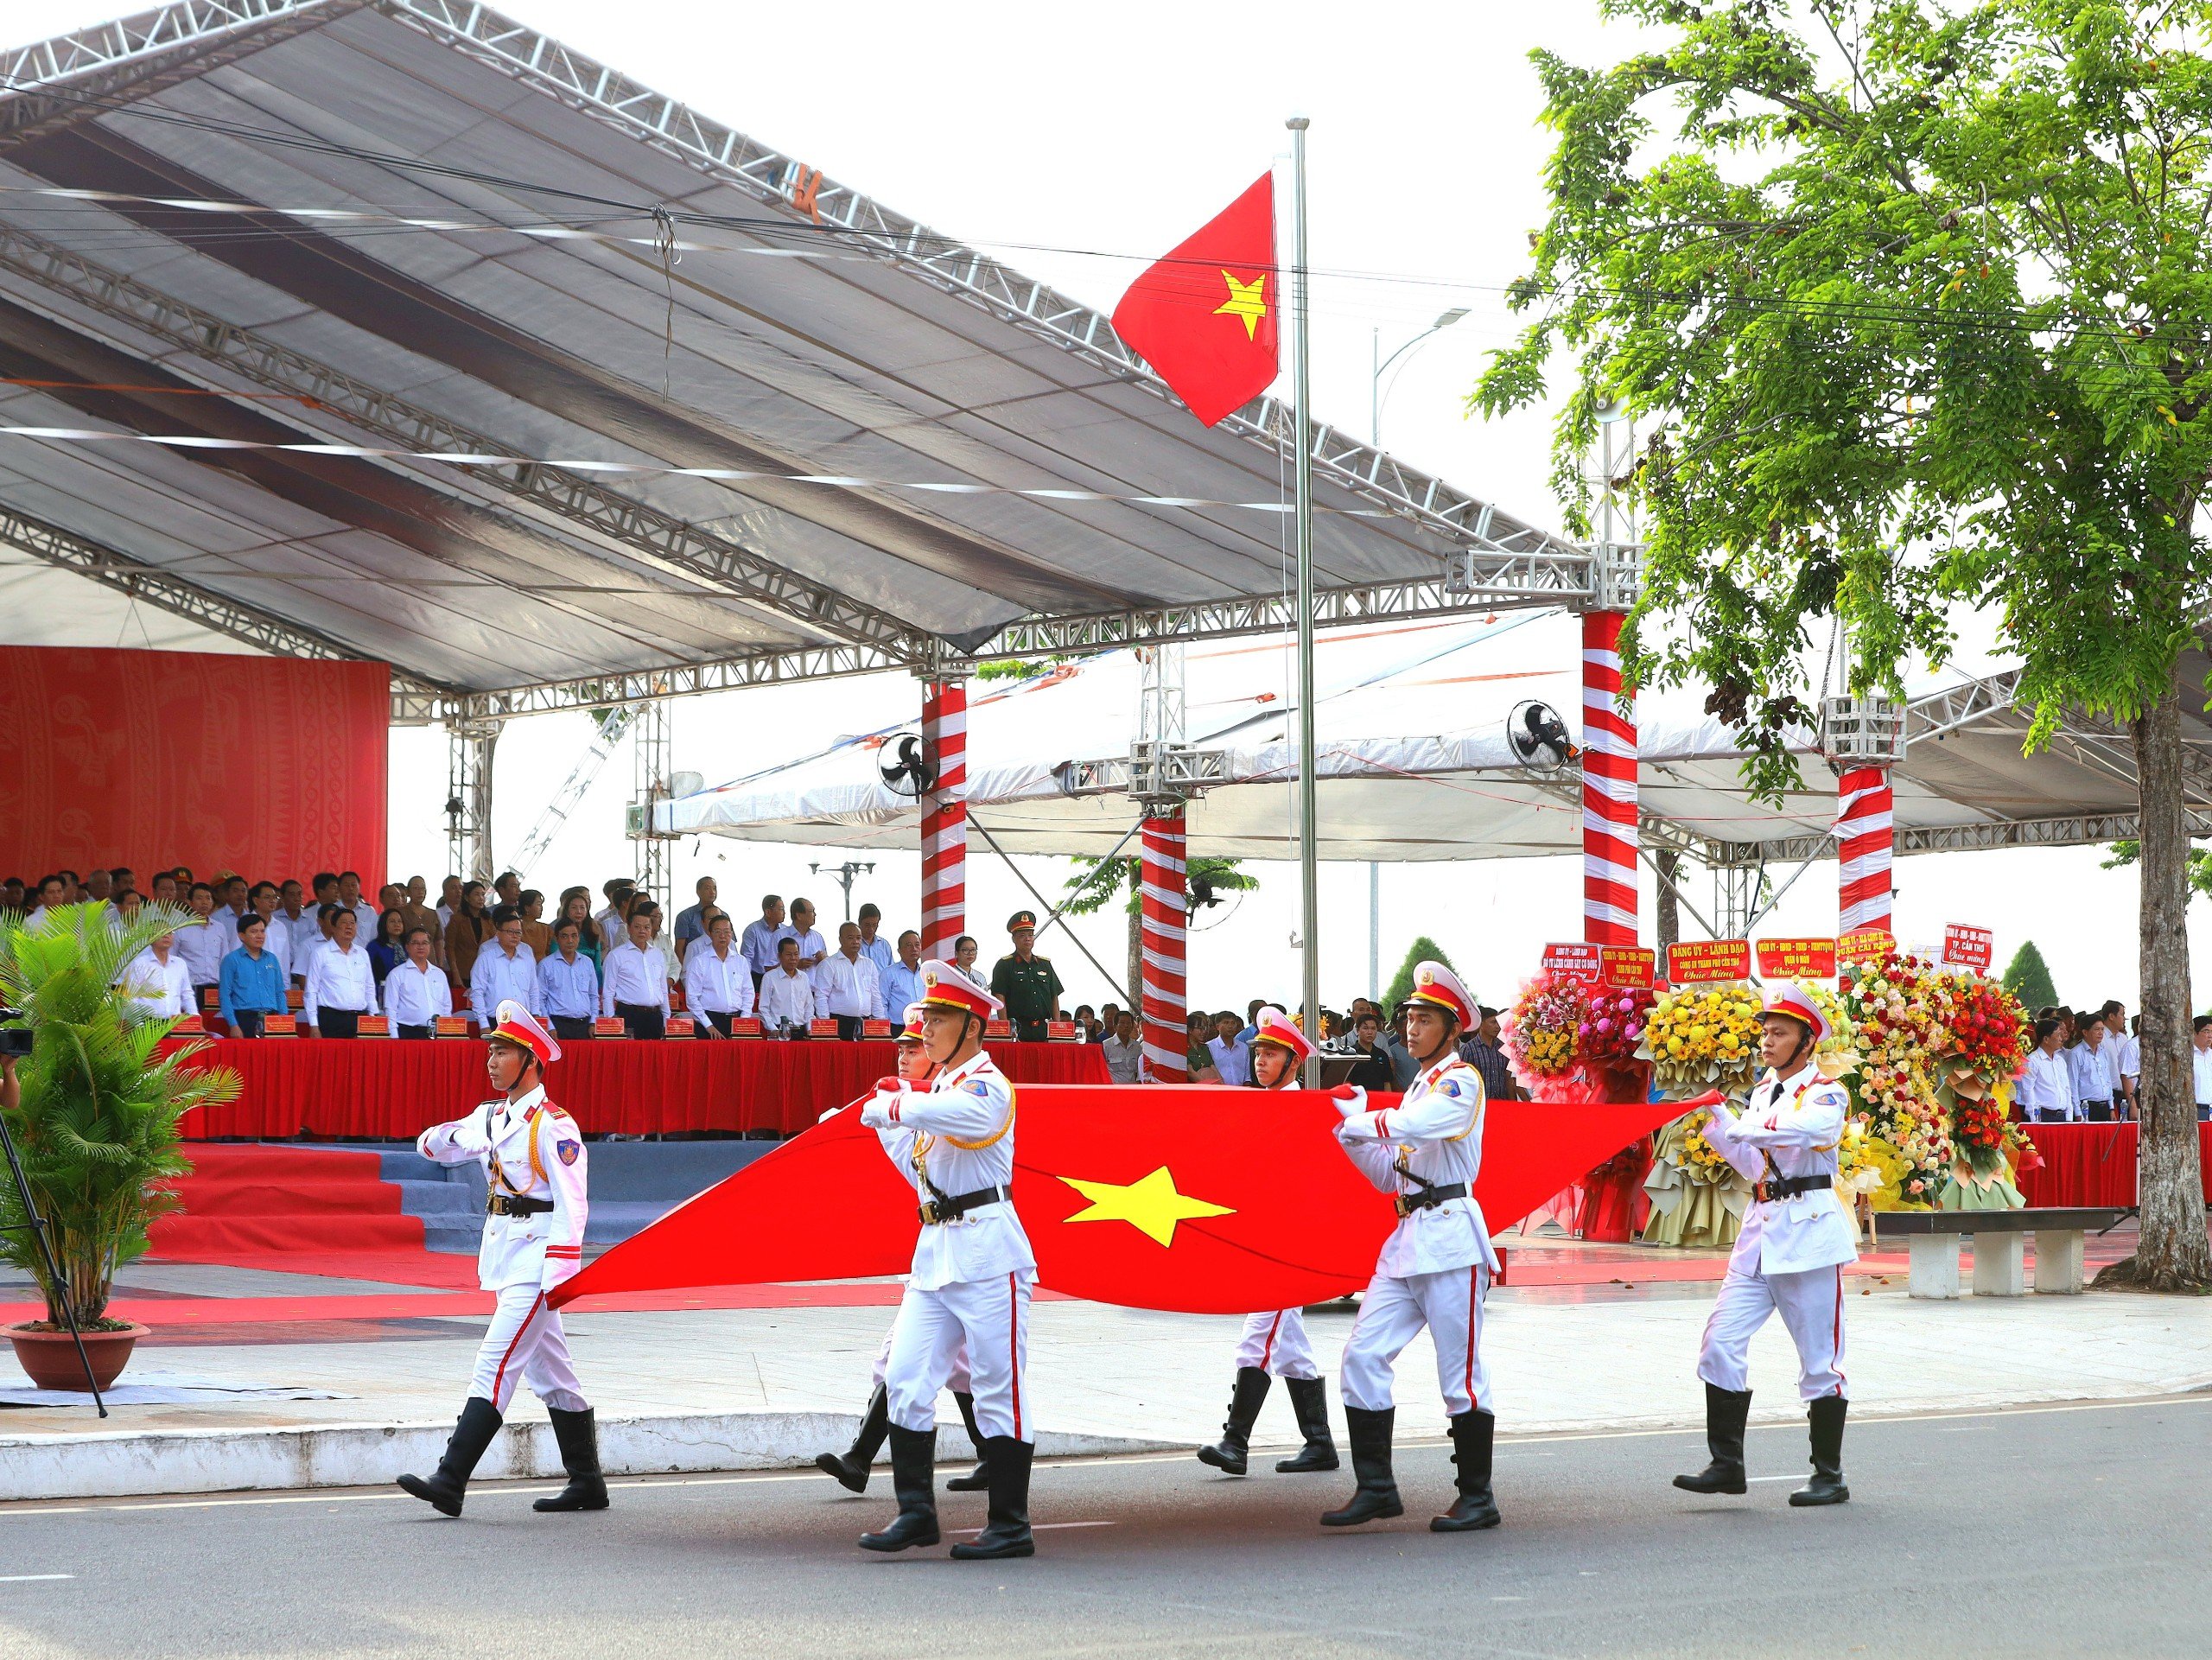 Khối rước cờ Tổ quốc di chuyển qua lễ đài trong nội dung lực lượng tham gia bảo vệ an ninh trật tự ở cơ sở tham gia diễu hành, biểu dương lực lượng.